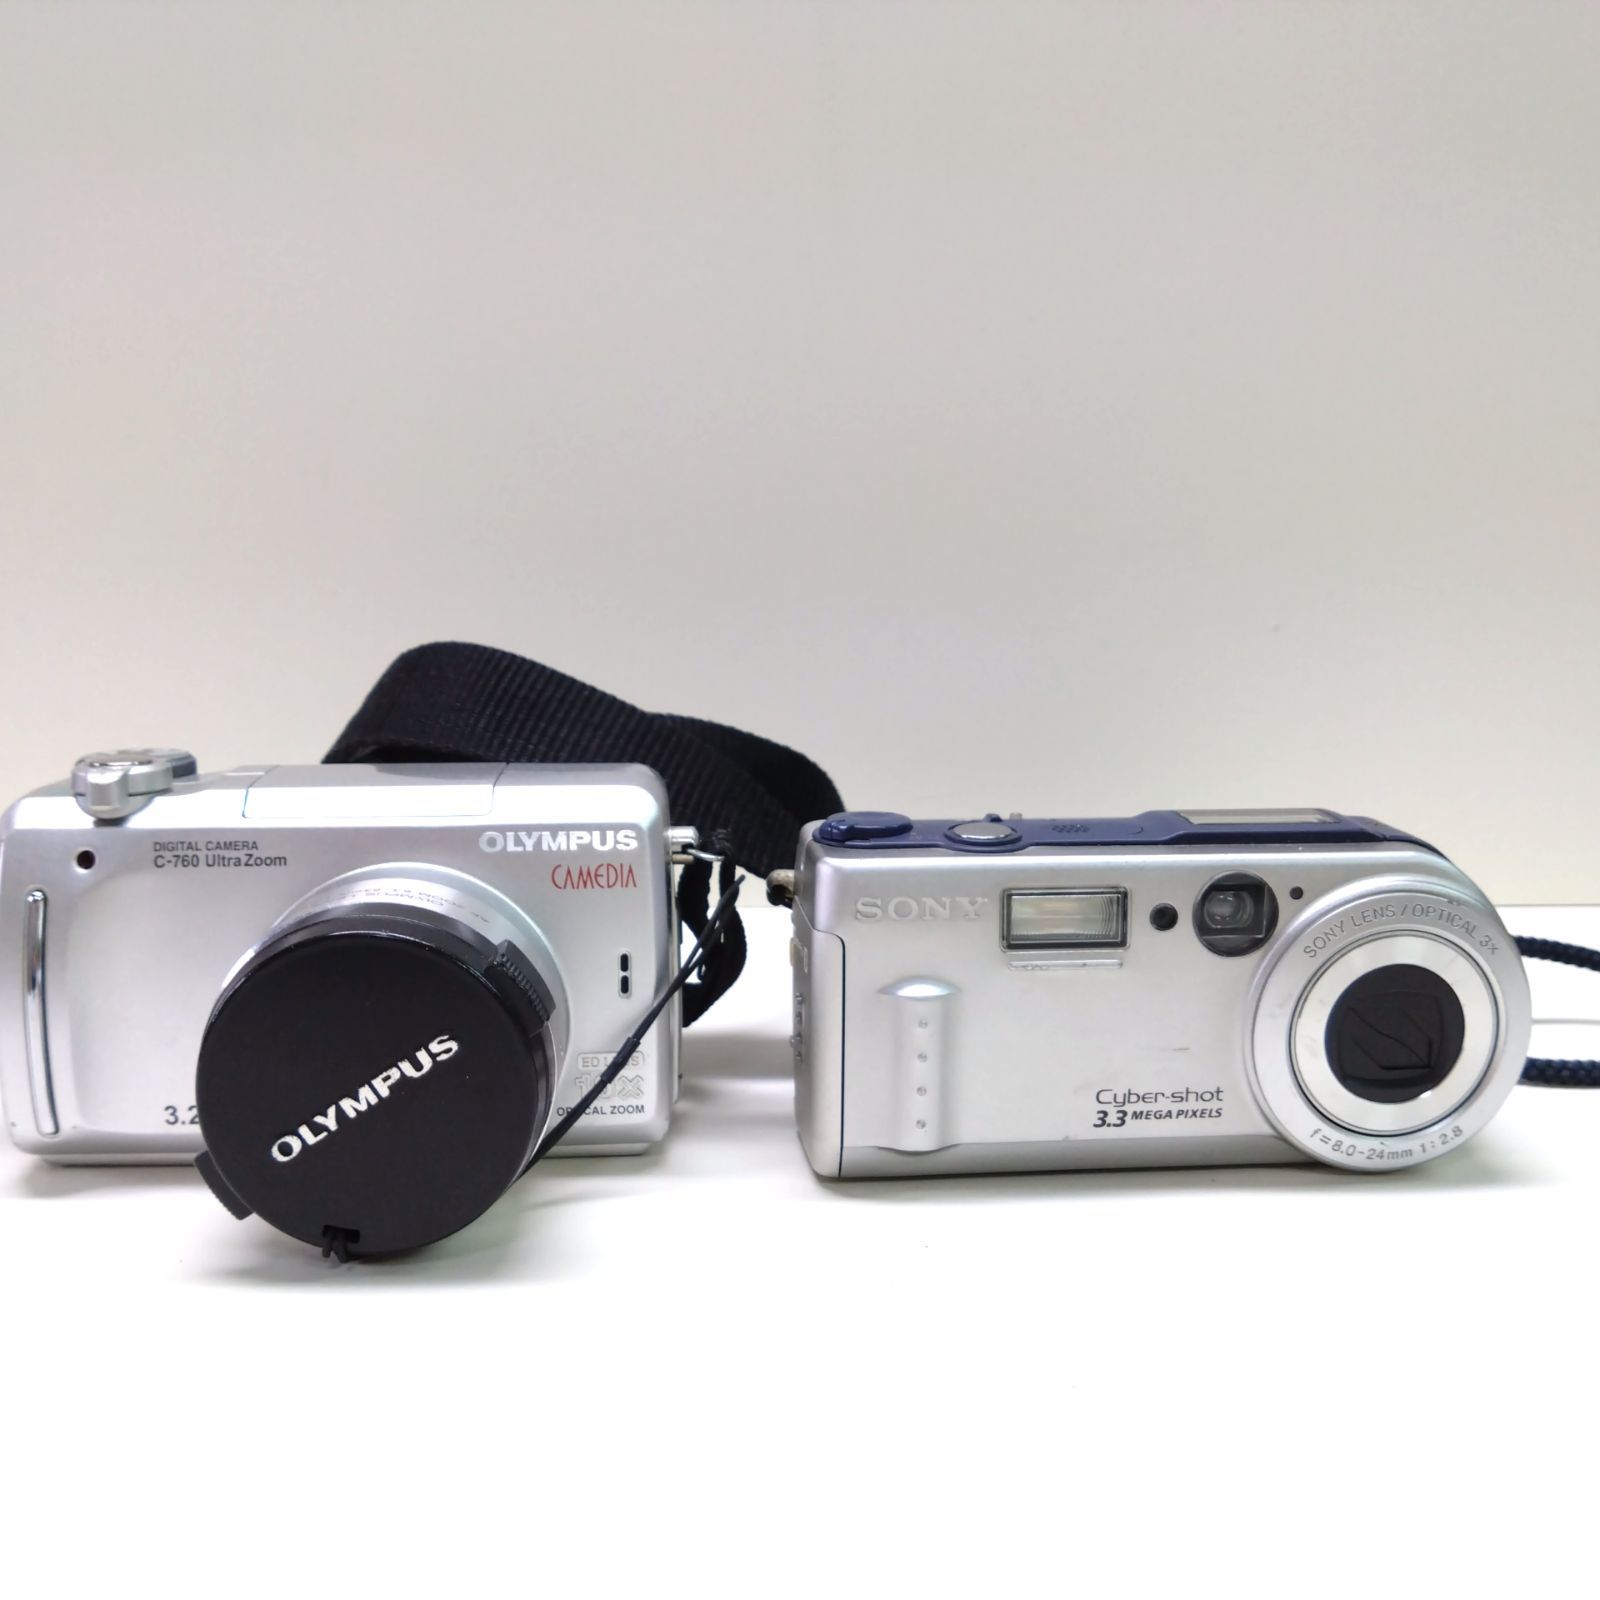 オリンパスデジタルカメラC-760ウルトラズーム - デジタルカメラ